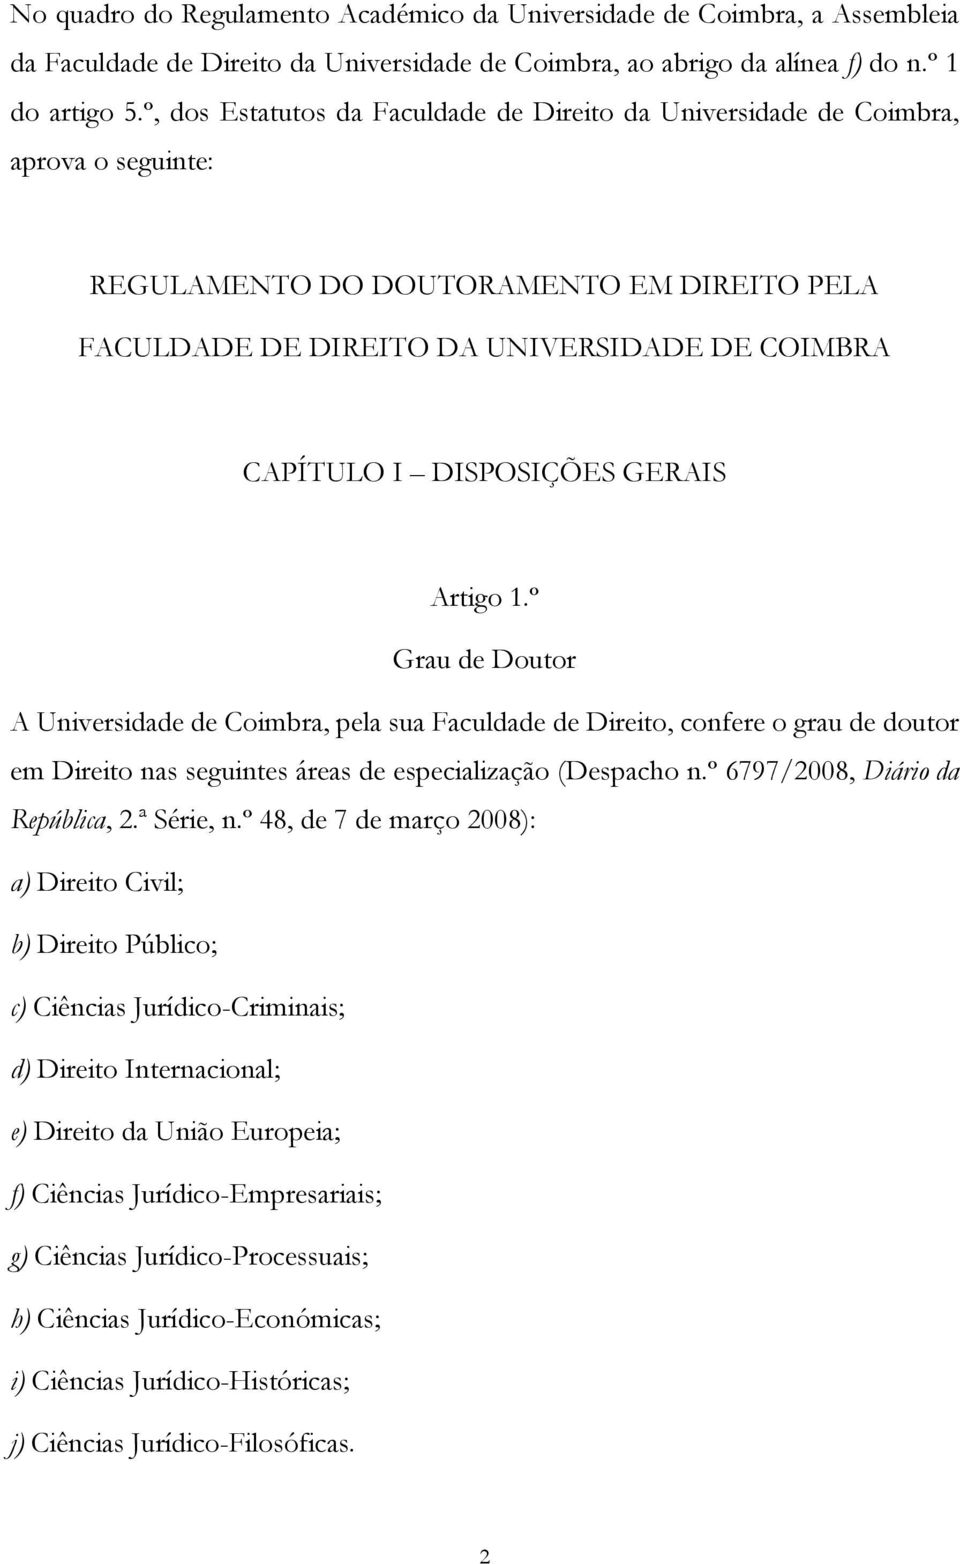 DISPOSIÇÕES GERAIS Artigo 1.º Grau de Doutor A Universidade de Coimbra, pela sua Faculdade de Direito, confere o grau de doutor em Direito nas seguintes áreas de especialização (Despacho n.